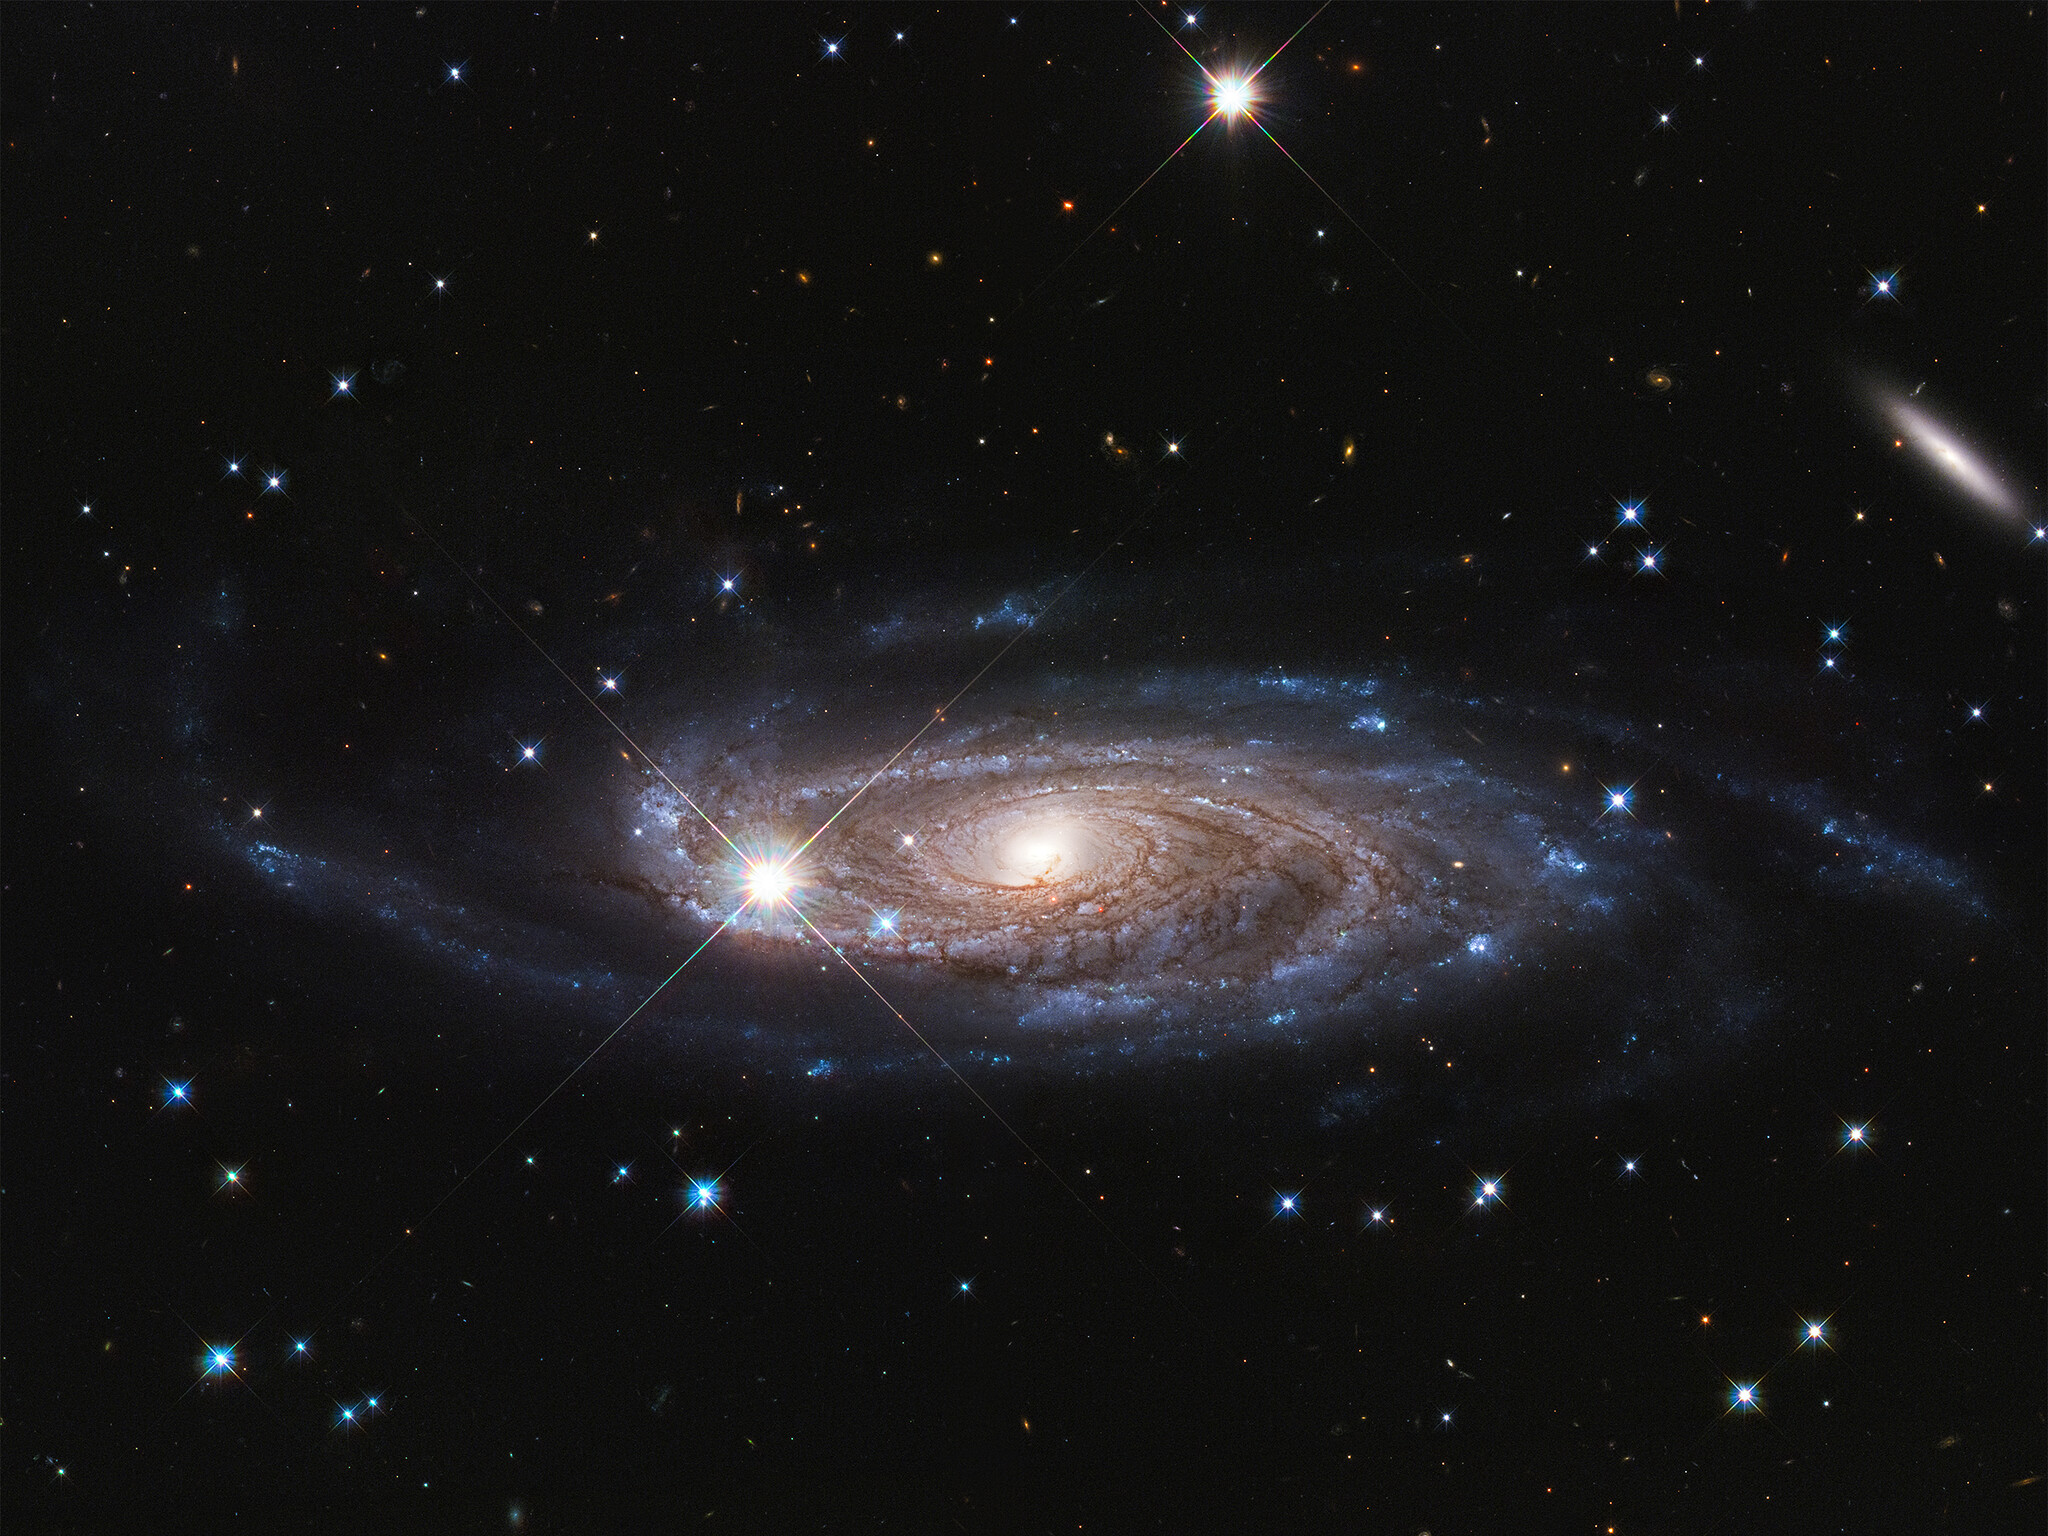 La Galaxie UGC 2885 est peut-être la plus grande de l'univers local. Elle est 2,5 fois plus large que notre Voie lactée et contient 10 fois plus d'étoiles. Cette galaxie est à 232 millions d'années-lumière, située dans la constellation nord de Persée. L'image a été prise par Hubble. © Nasa, ESA, and B. Holwerda (University of Louisville).